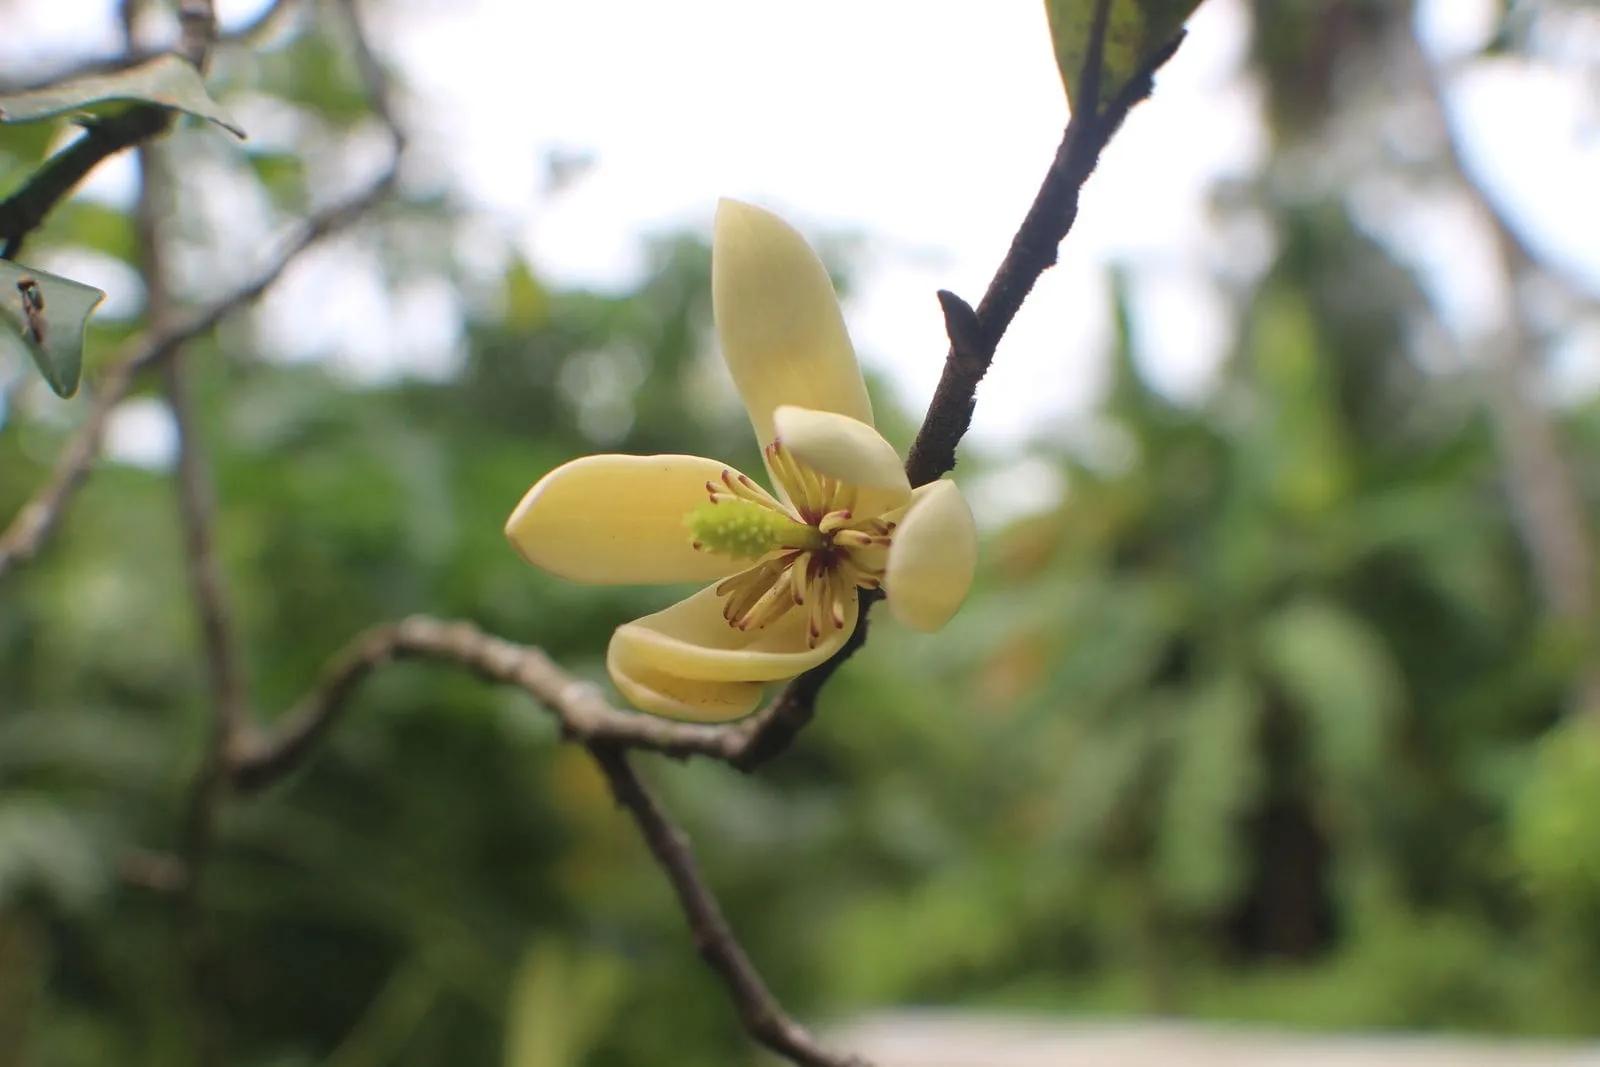 Magnolia figo or Banana Shrub